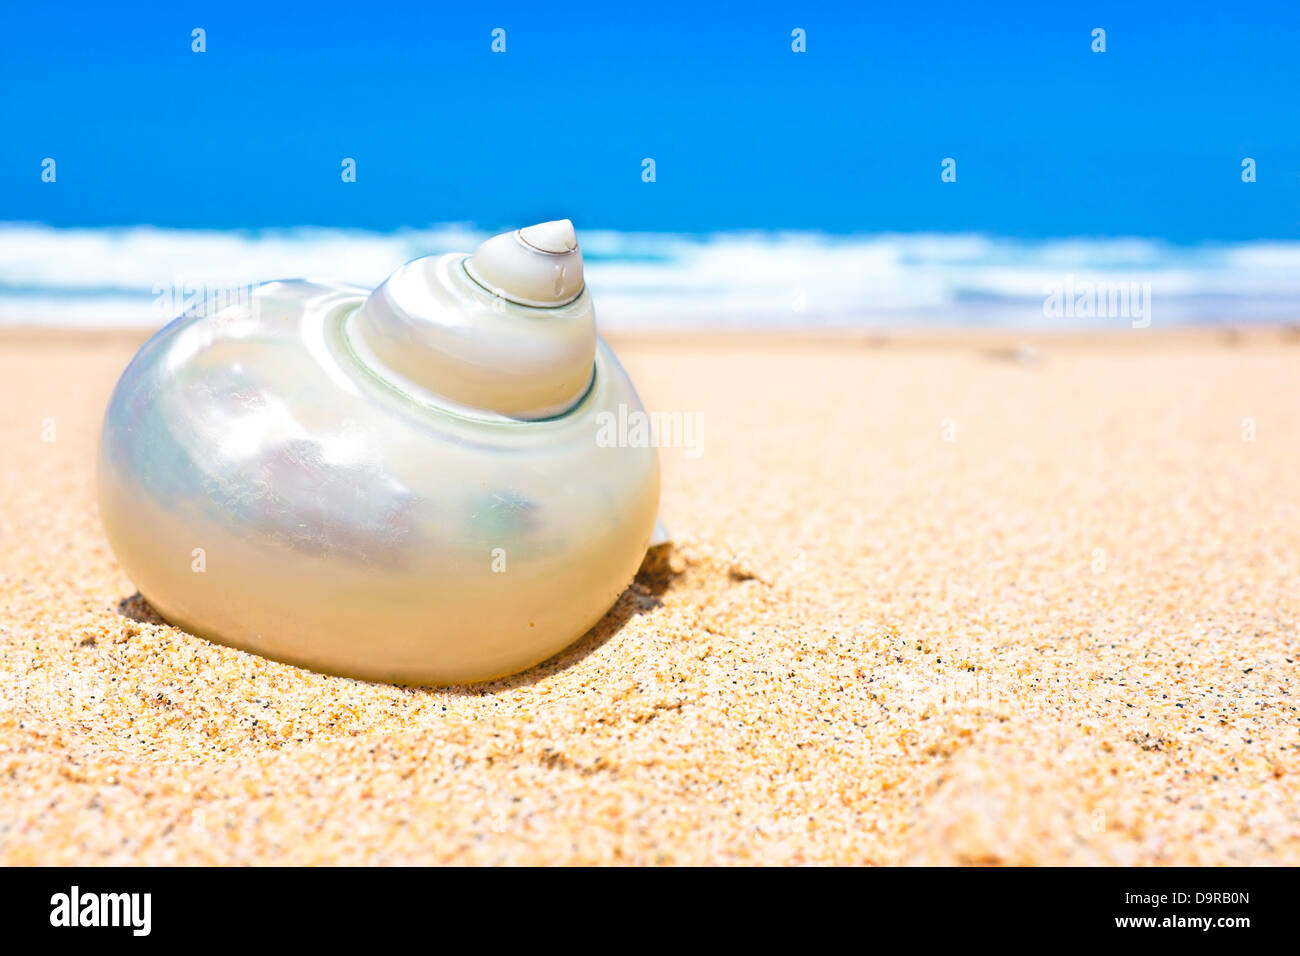 Seashell at the beach Stock Photo